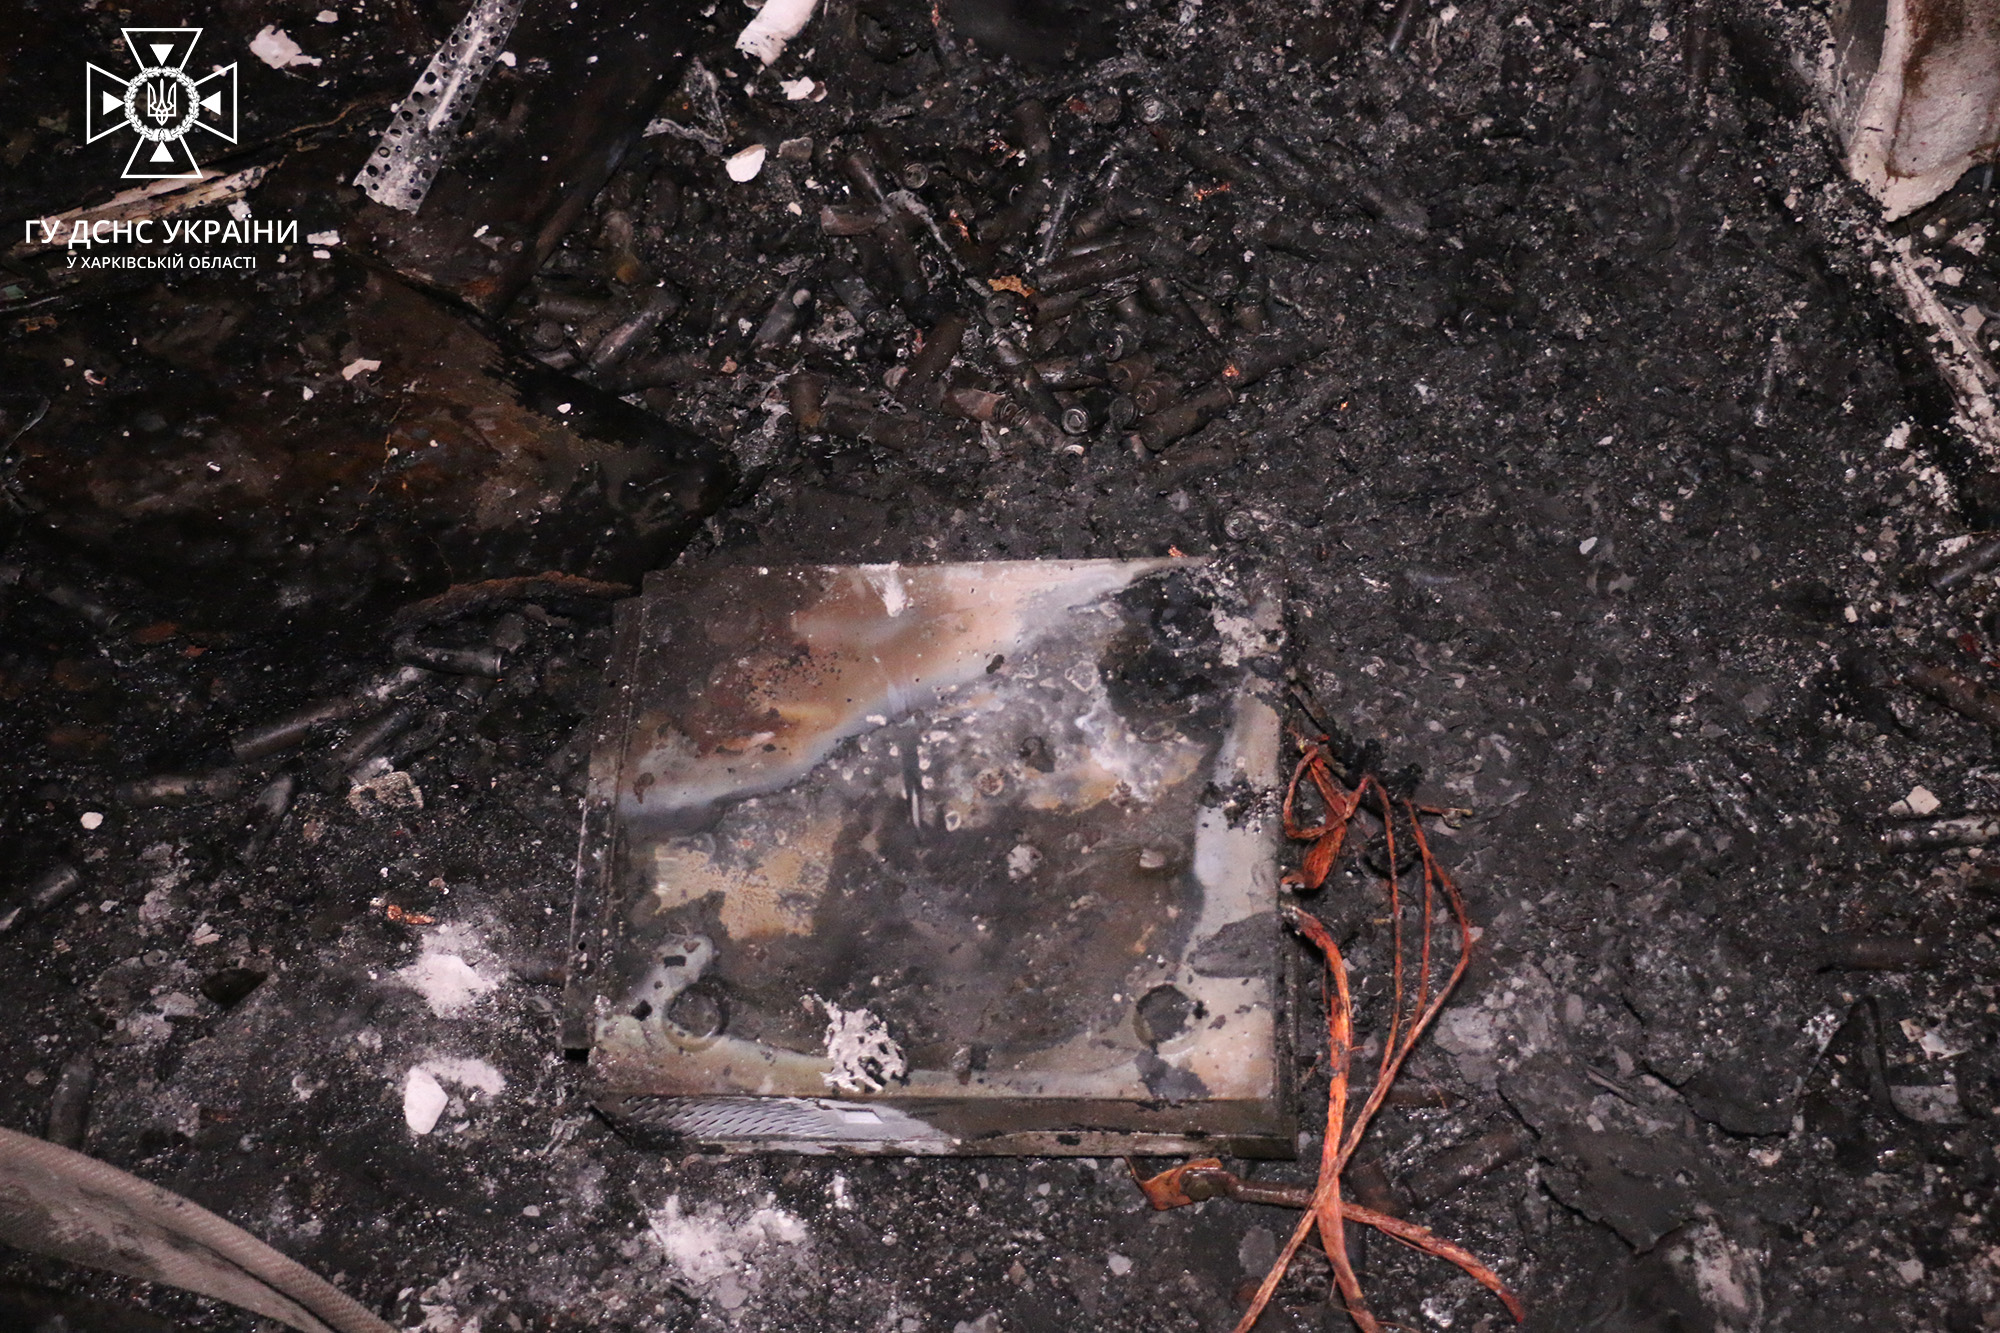 У квартирі в Харкові на зарядці вибухнула електробатарея: сталася пожежа